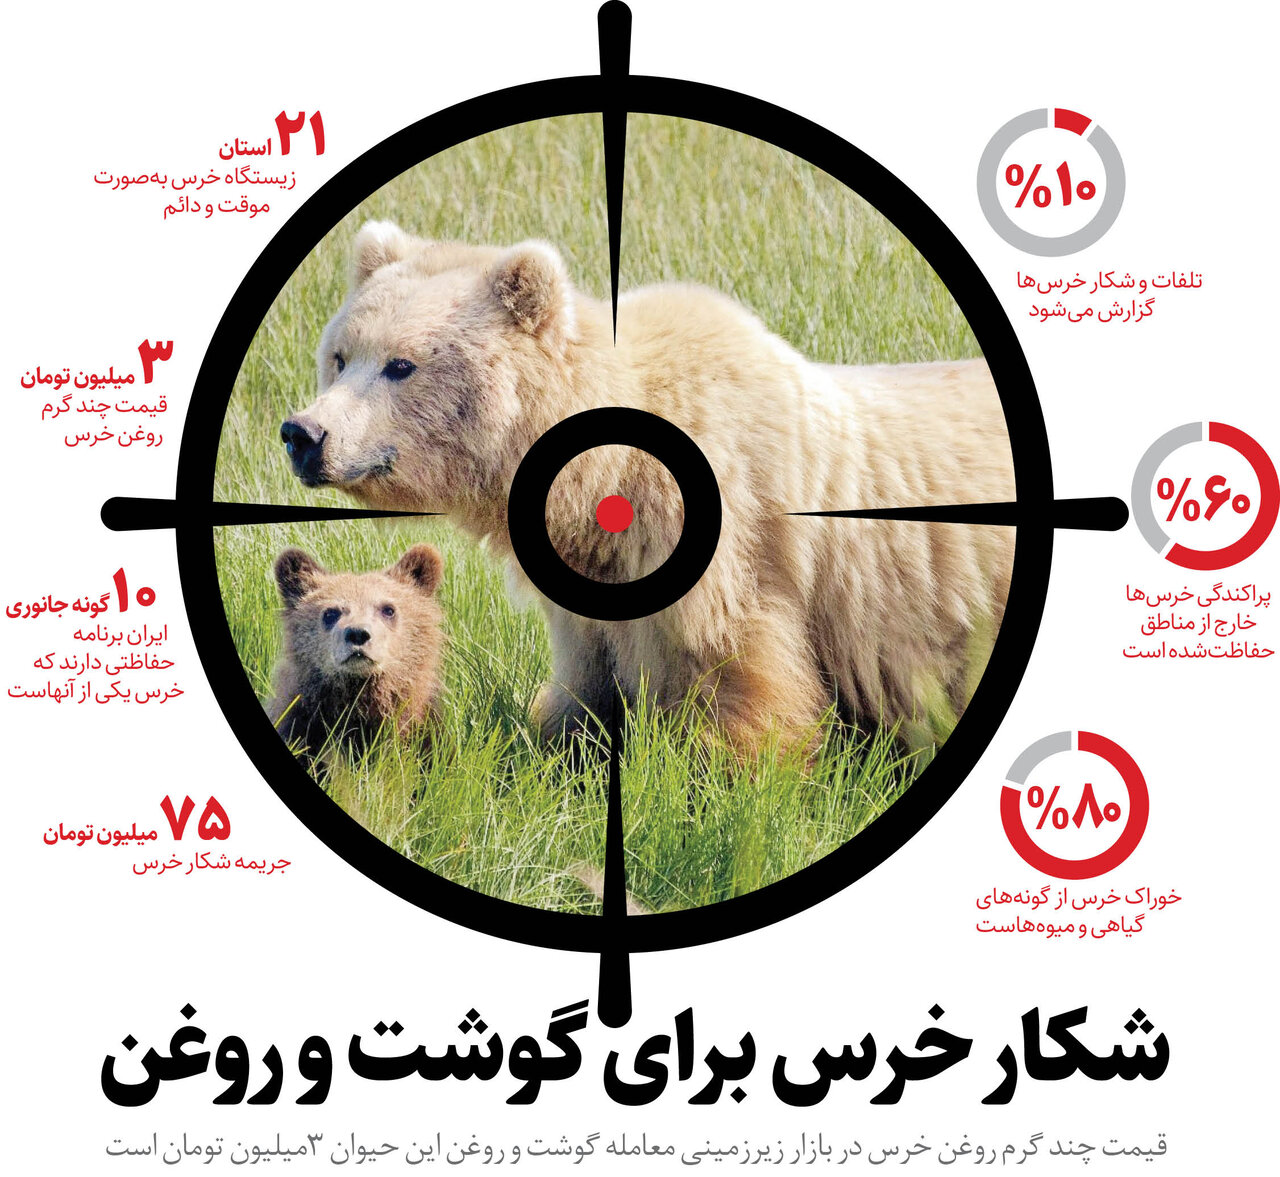 کشتار خرس برای دردهای بی درمان | روغن خرس 3 میلیون تومان؟ | شکار خرس برای گوشت و روغن